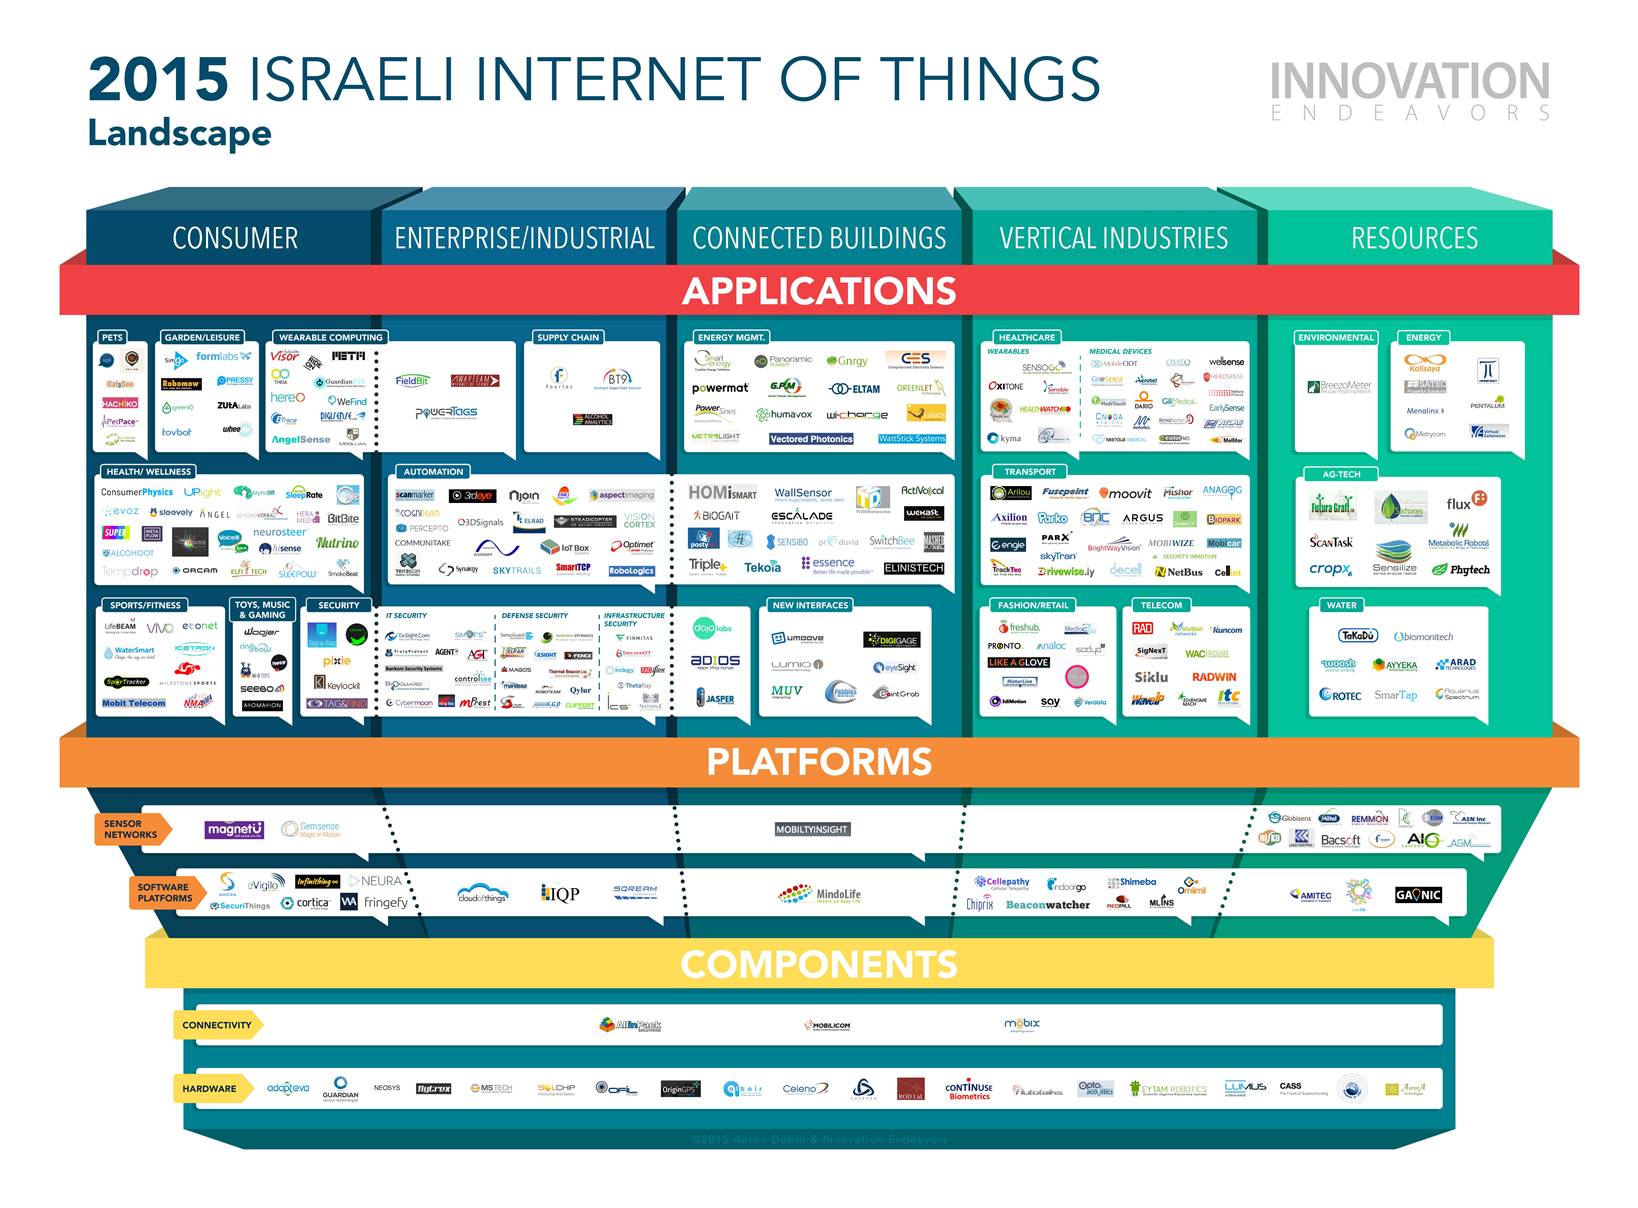 Innovation Endeavors’ Israel IoT Landscape. Image courtesy